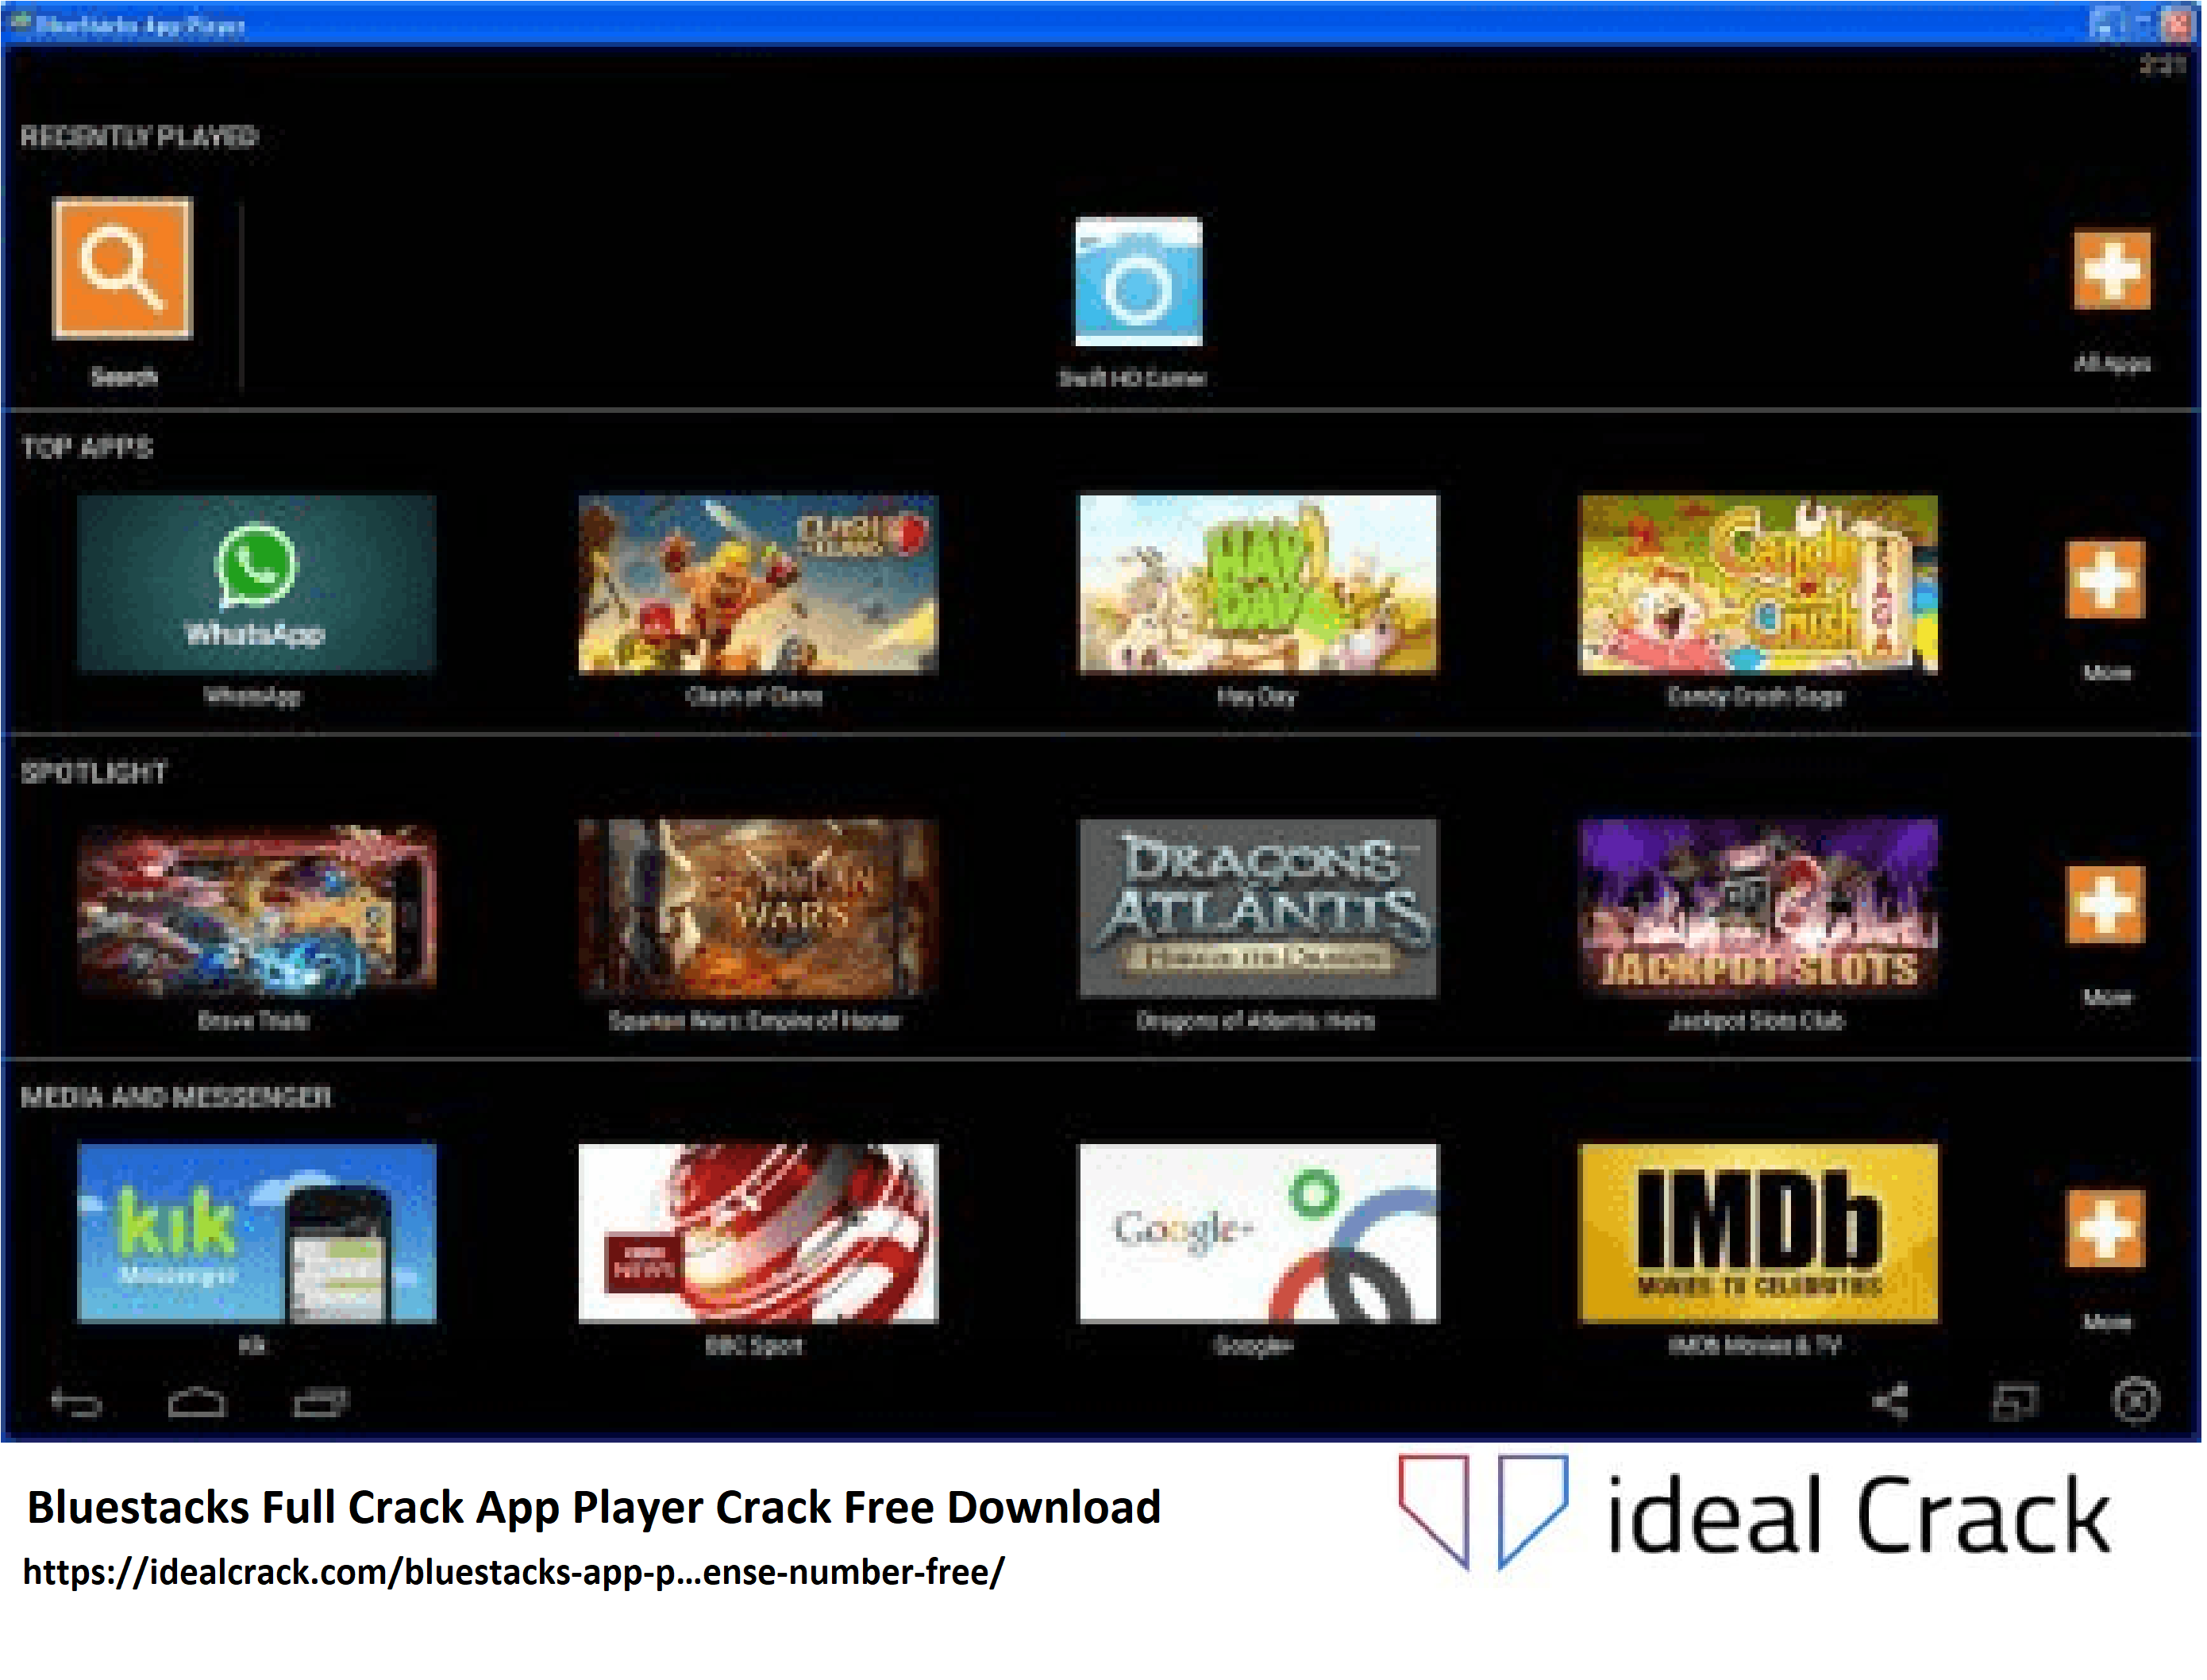 Bluestacks Full Crack App Player Crack